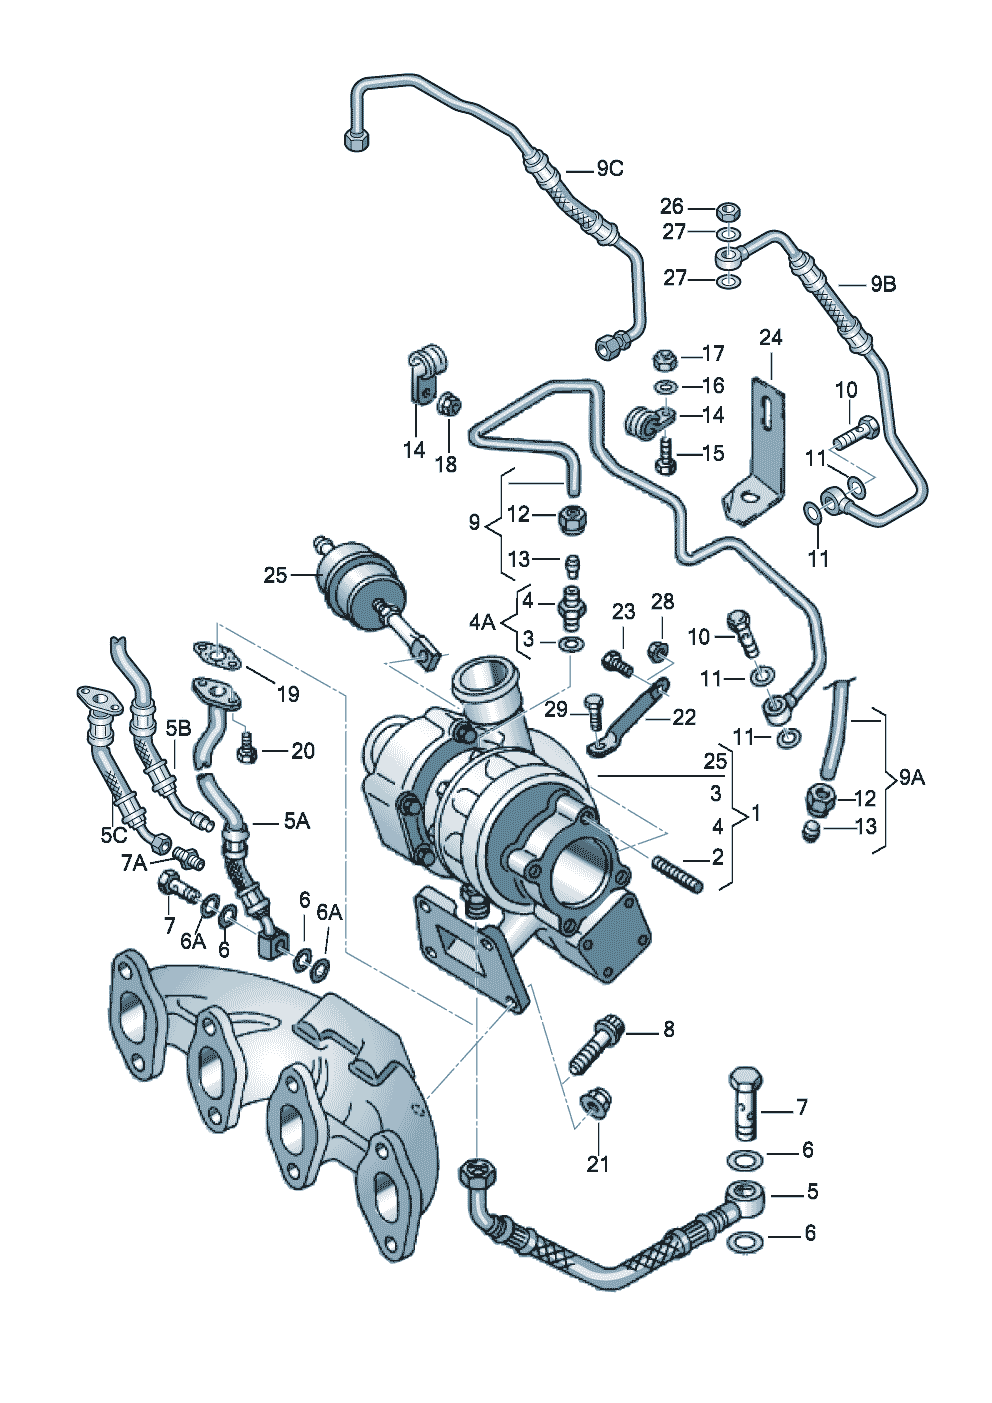 Exhaust gas turbocharger 1.9ltr. - Audi A4/S4/Avant - a4q